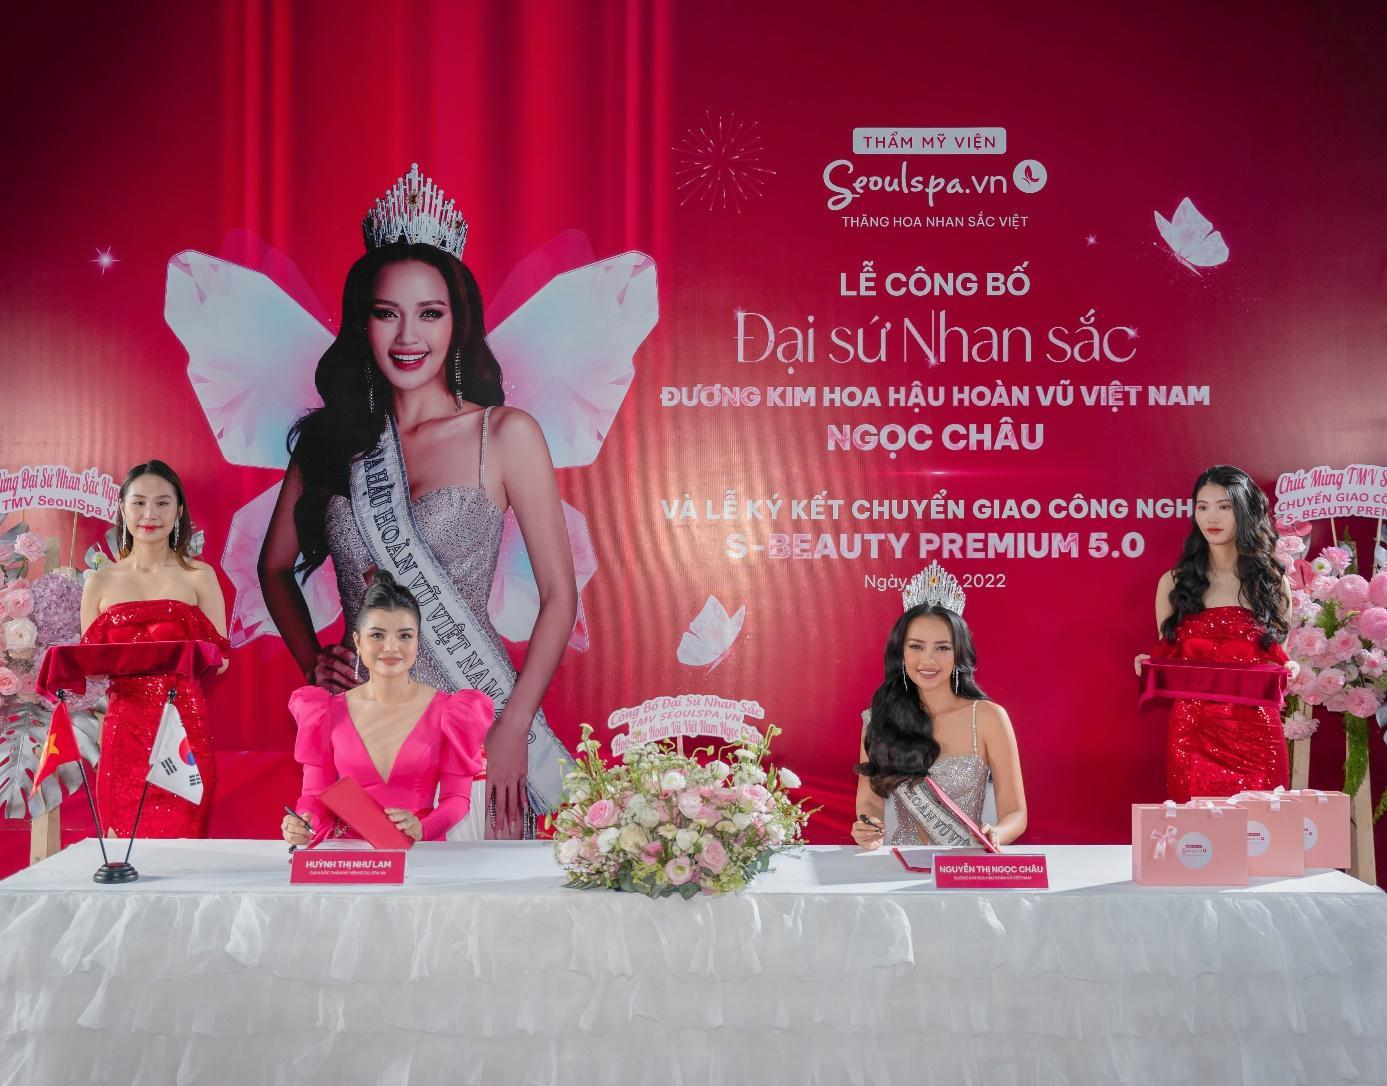 Hoa hậu Ngọc Châu: 'Thẩm mỹ viện Seoulspa.vn giúp tôi sẵn sàng cho vương miện' - 1